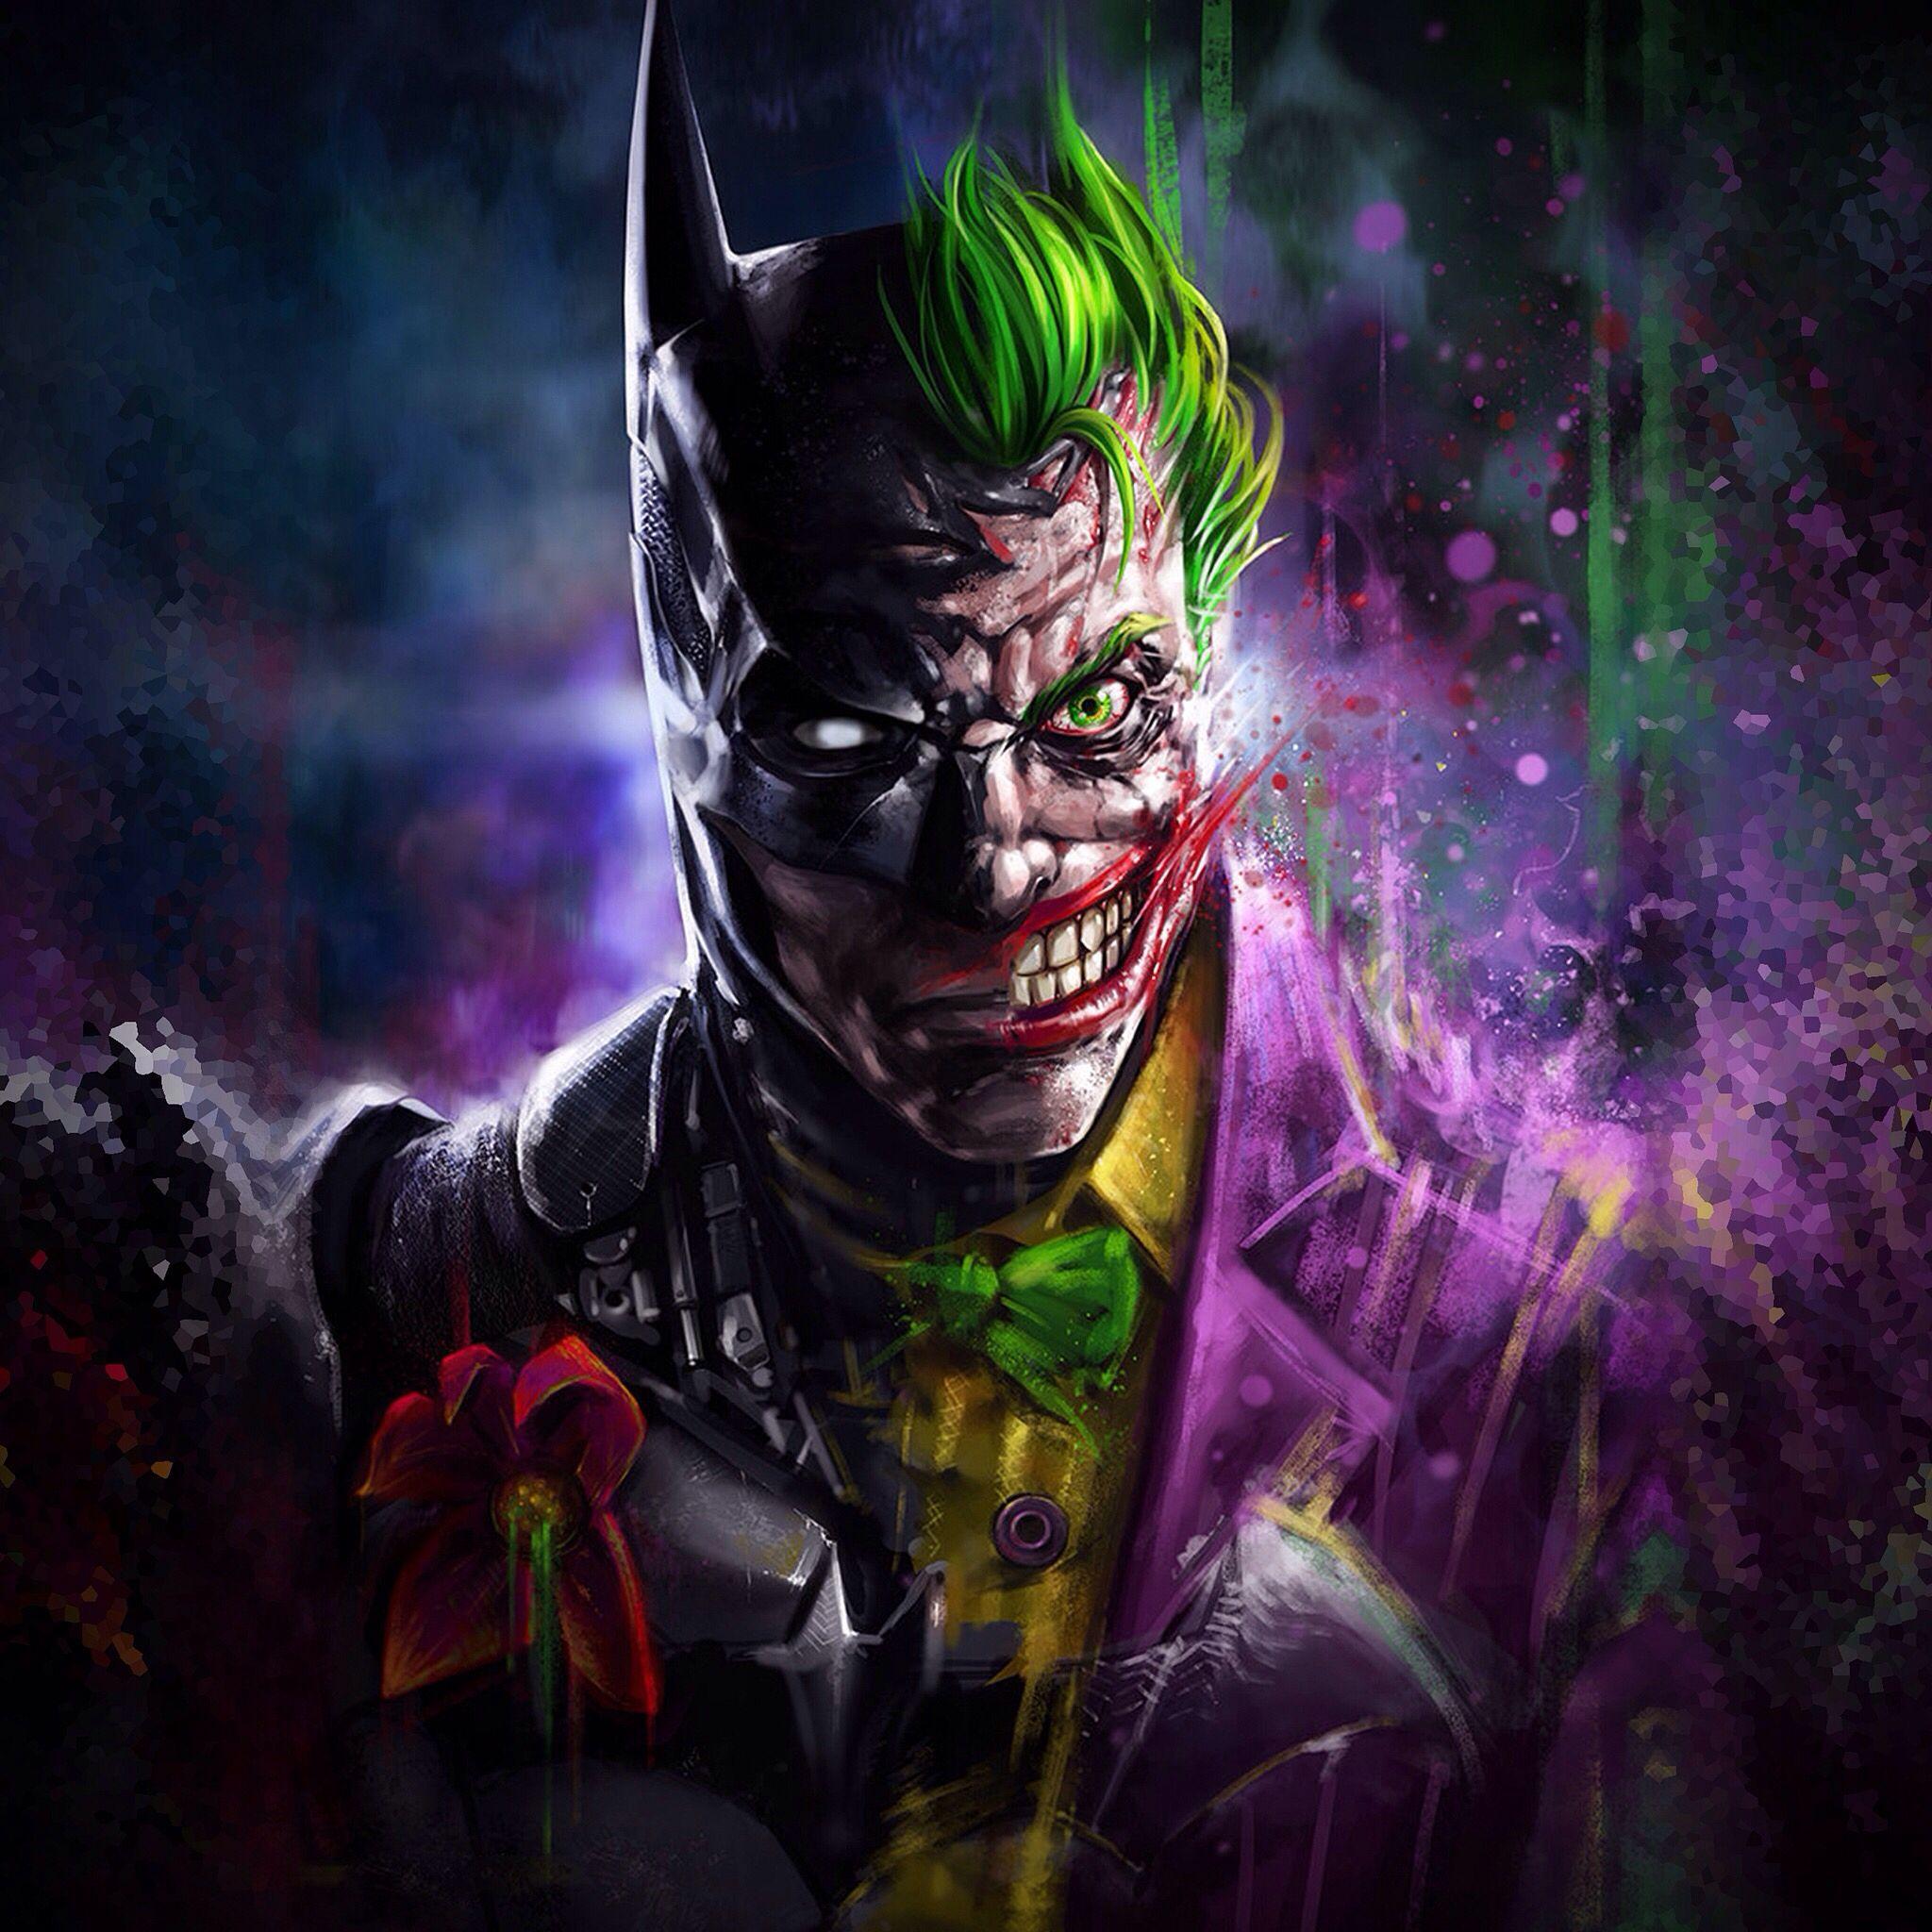 Batman Joker Wallpapers Top Free Batman Joker Backgrounds Wallpaperaccess